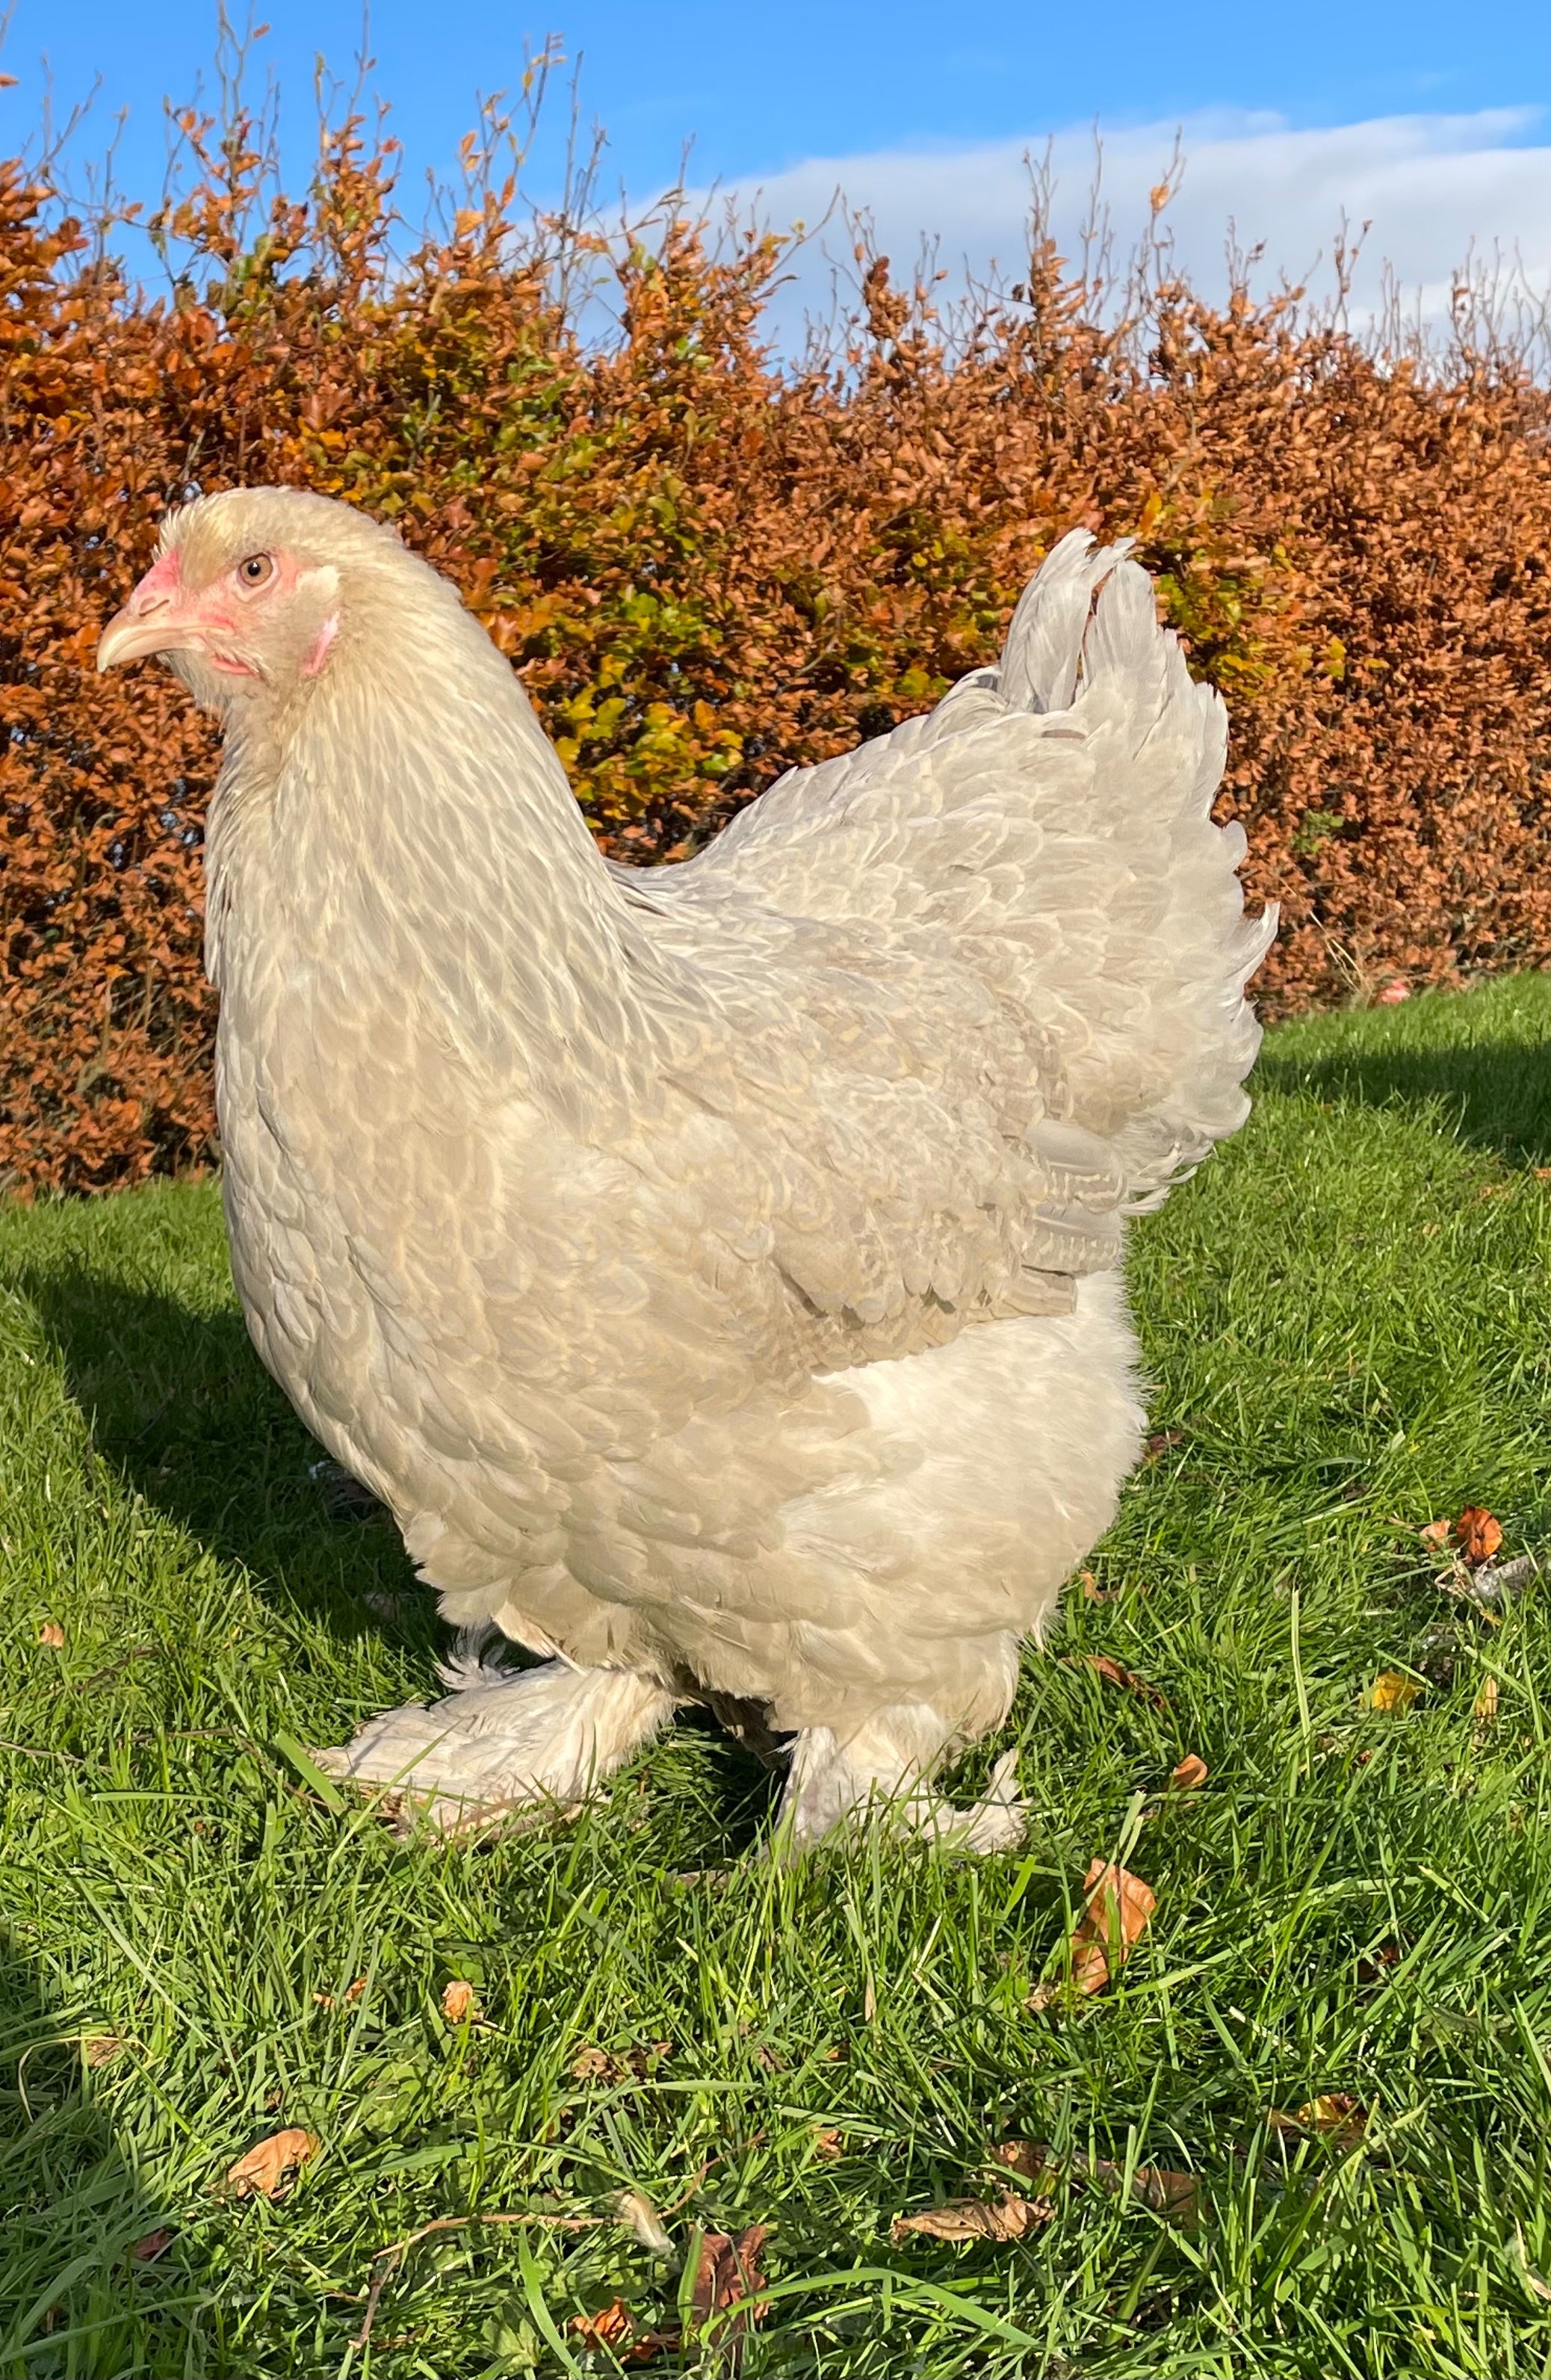 Isabel brahma Beautiful breed - Fancy Chicken Breeds